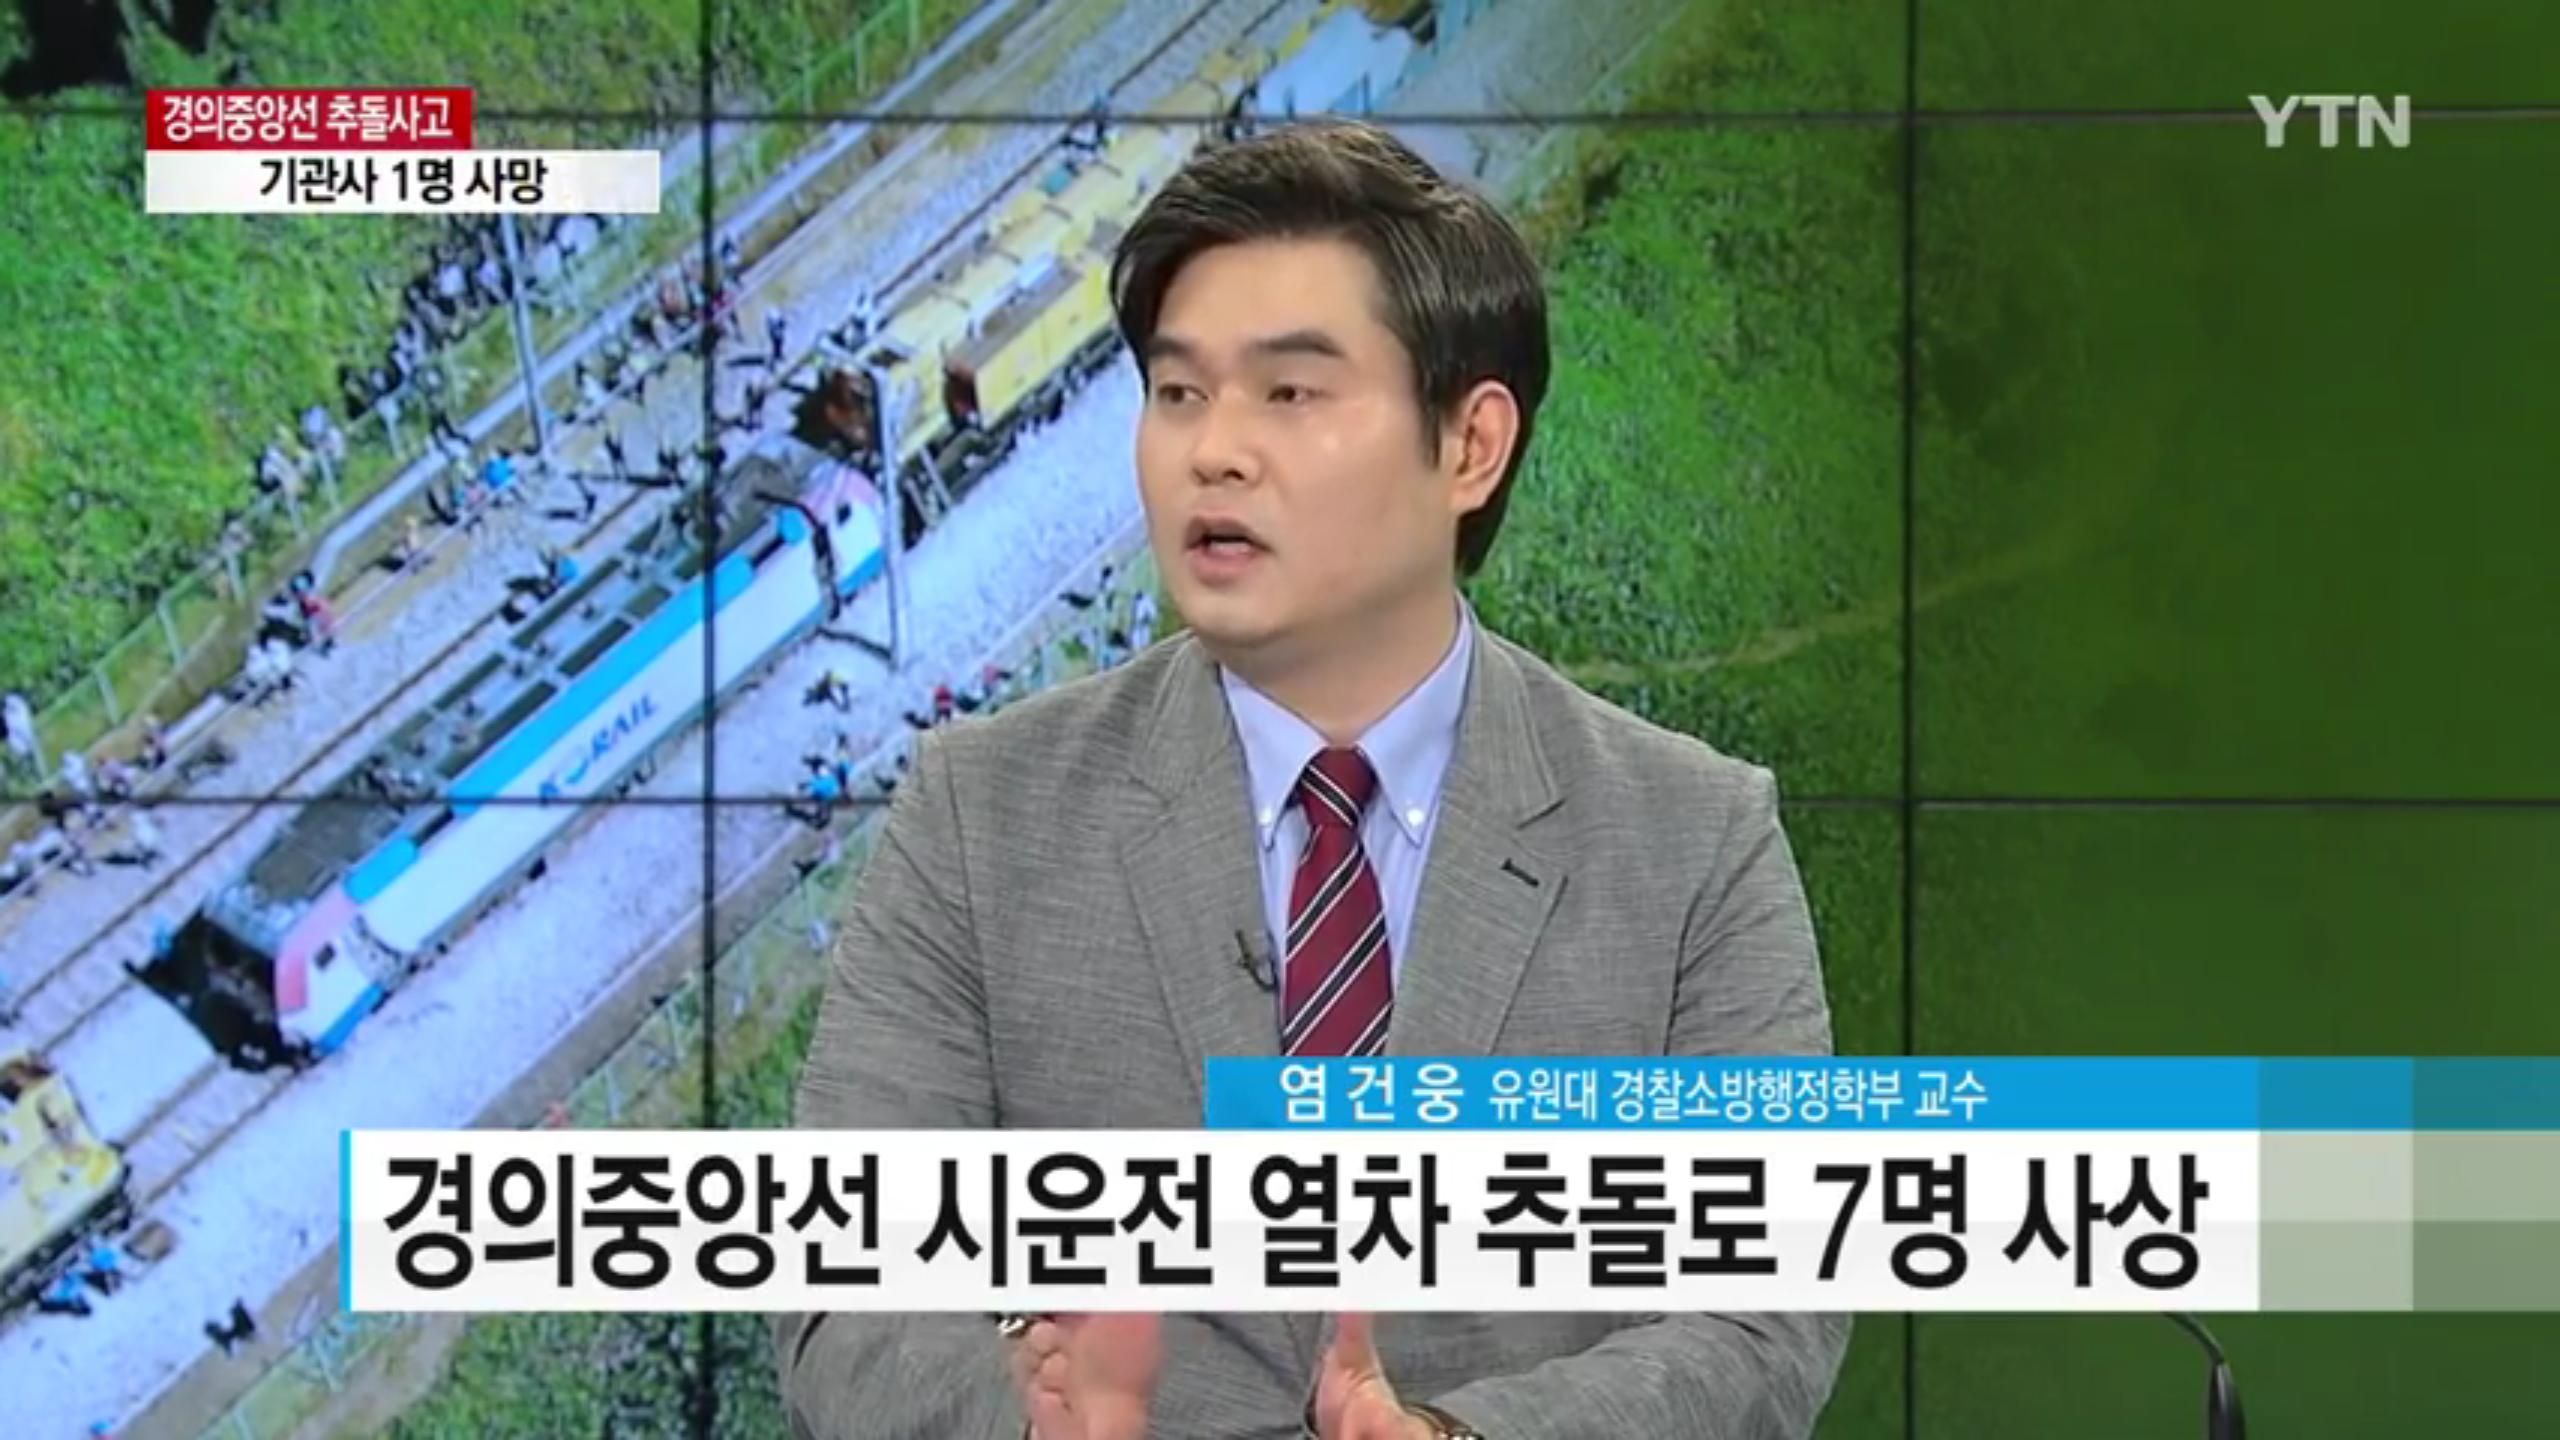 [언론보도] YTN 뉴스통 '시운전 기관차 추돌사고 7명 사상' (염건웅 교수) 사진1